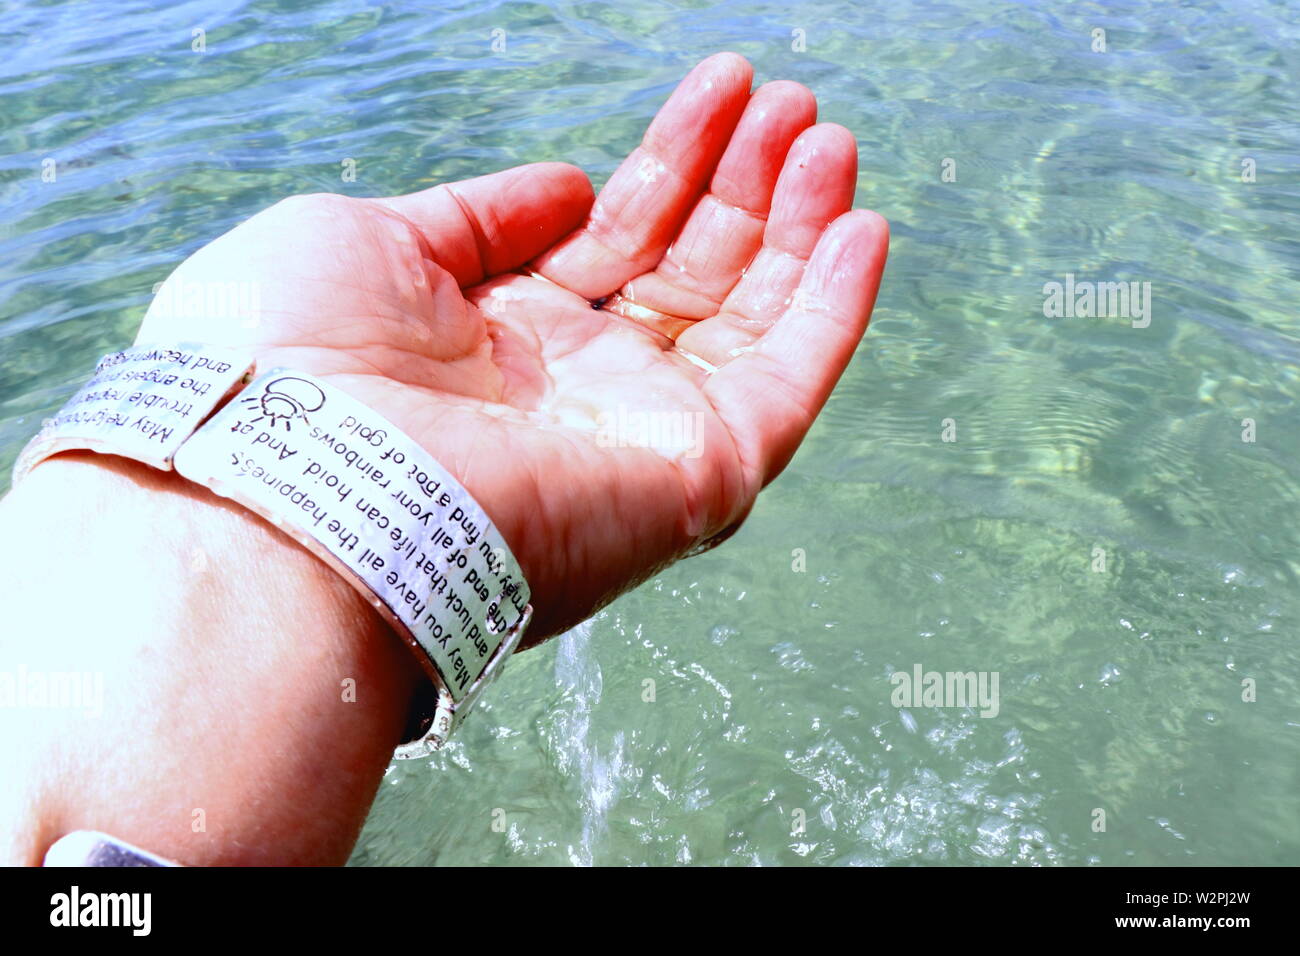 Woman's hand with silver bracelets et bagues, les projections dans l'eau de mer Banque D'Images